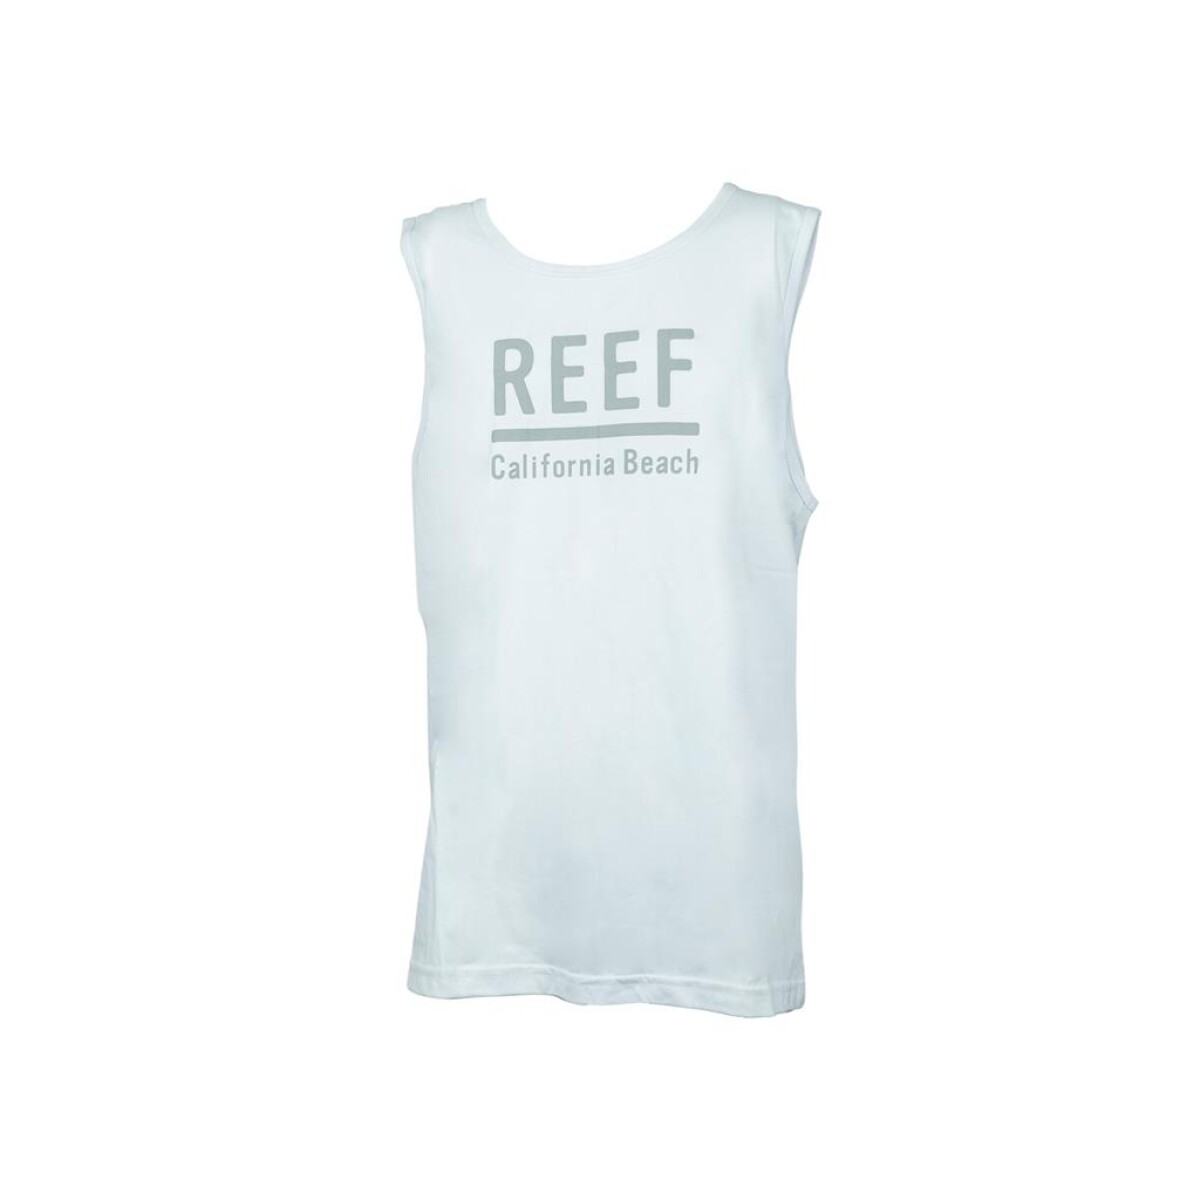 Musculosa de Hombre Reef - HANALEI REG -32230287 - BLANCO 